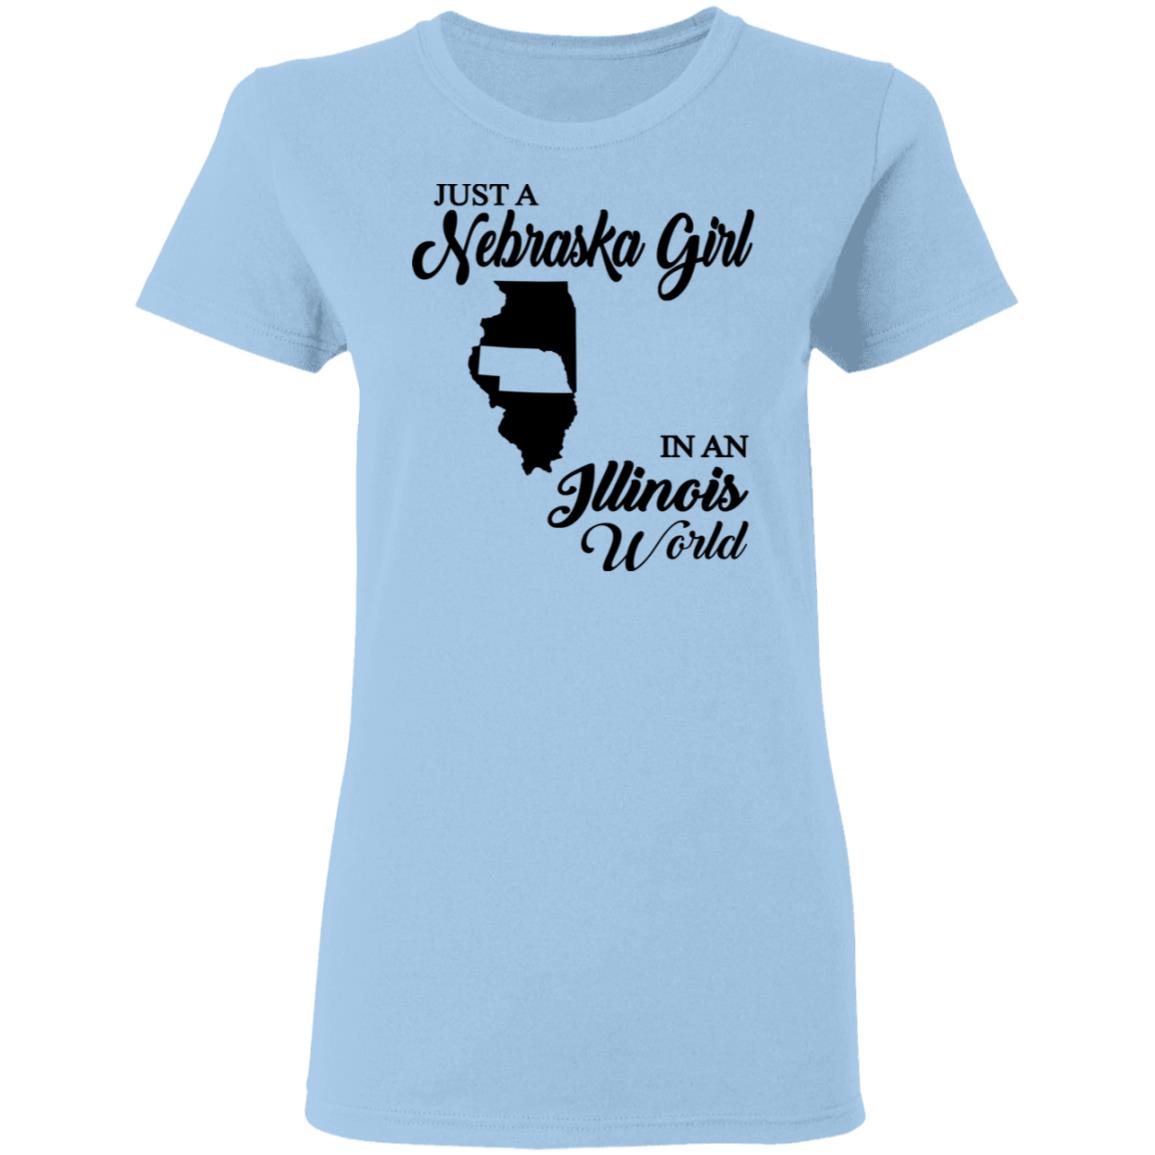 Just A Nebraska Girl In An Illinois World T-Shirt - T-shirt Teezalo